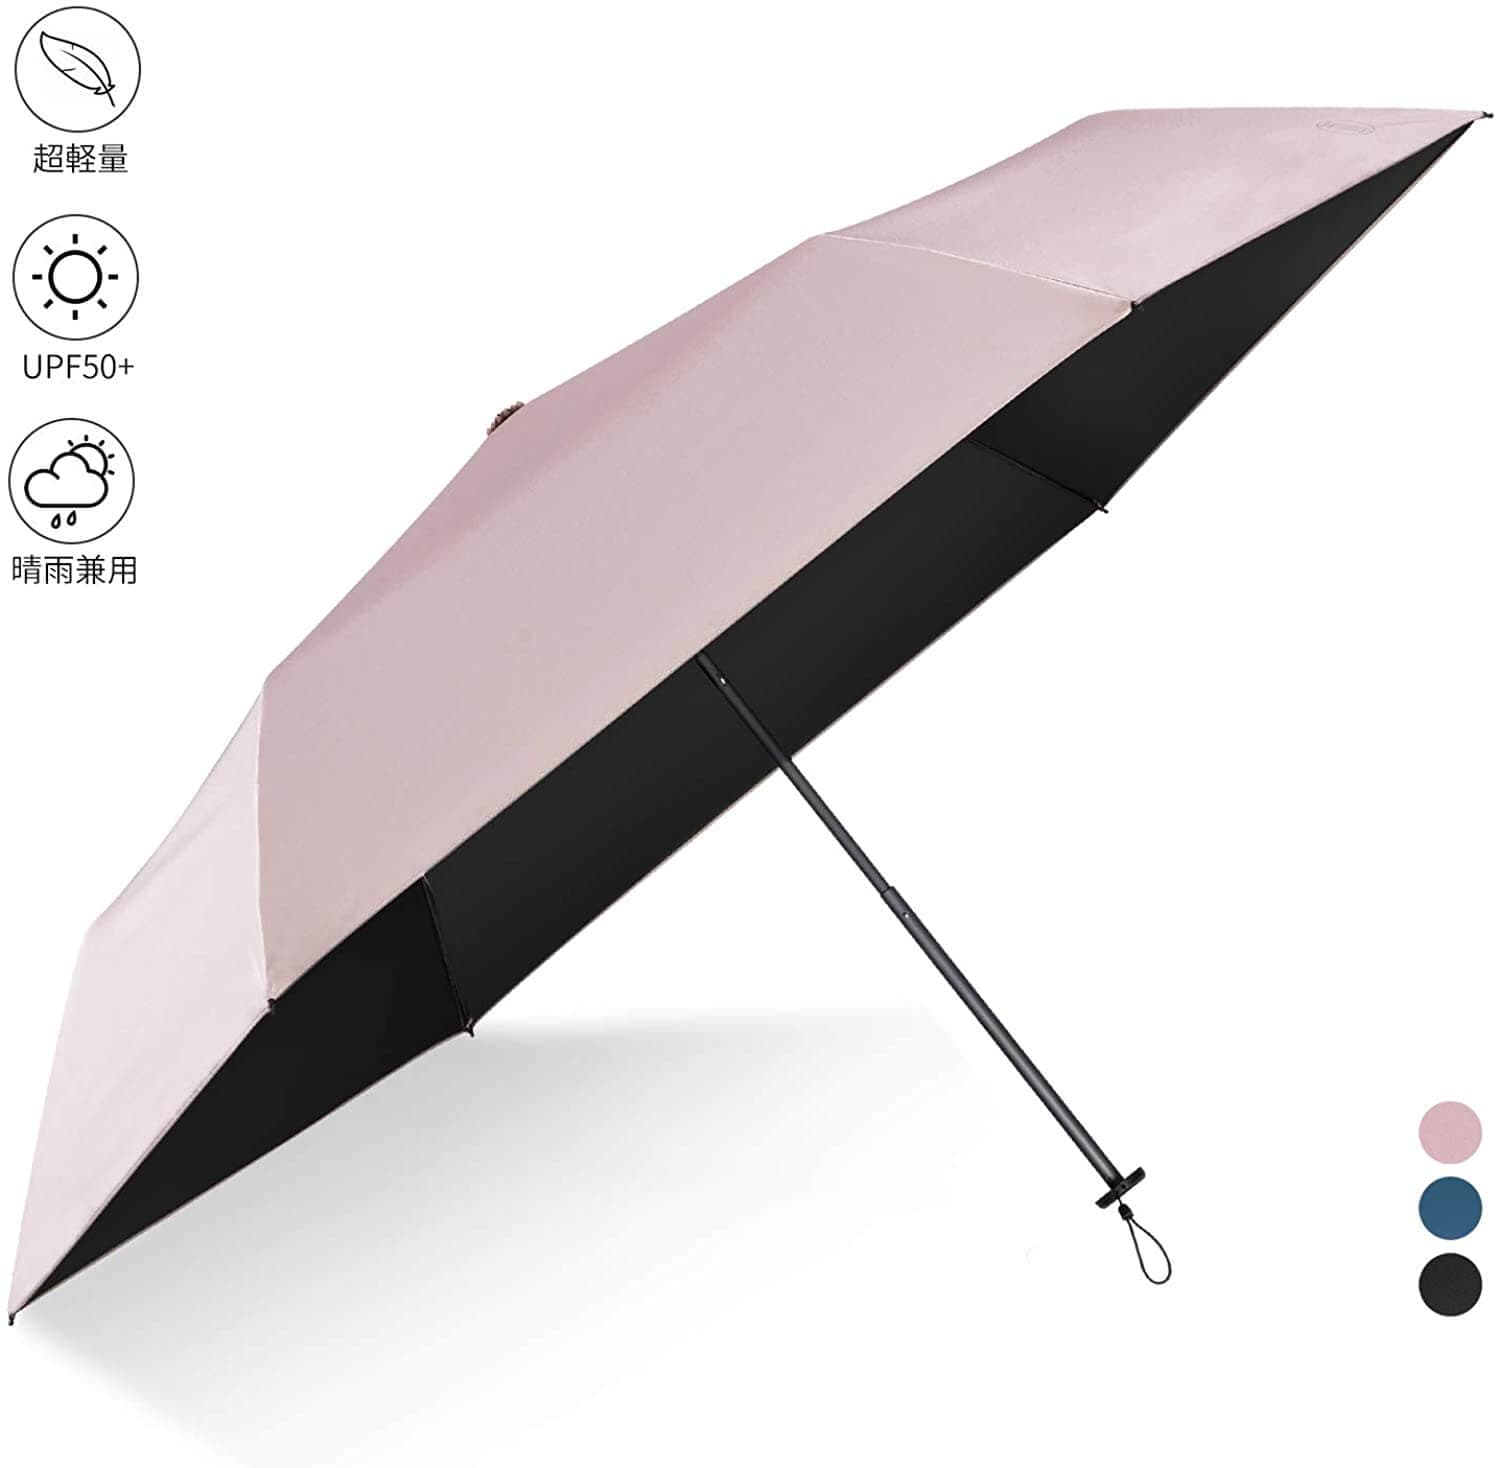 YOSHINO 日傘 超軽量 折りたたみ傘